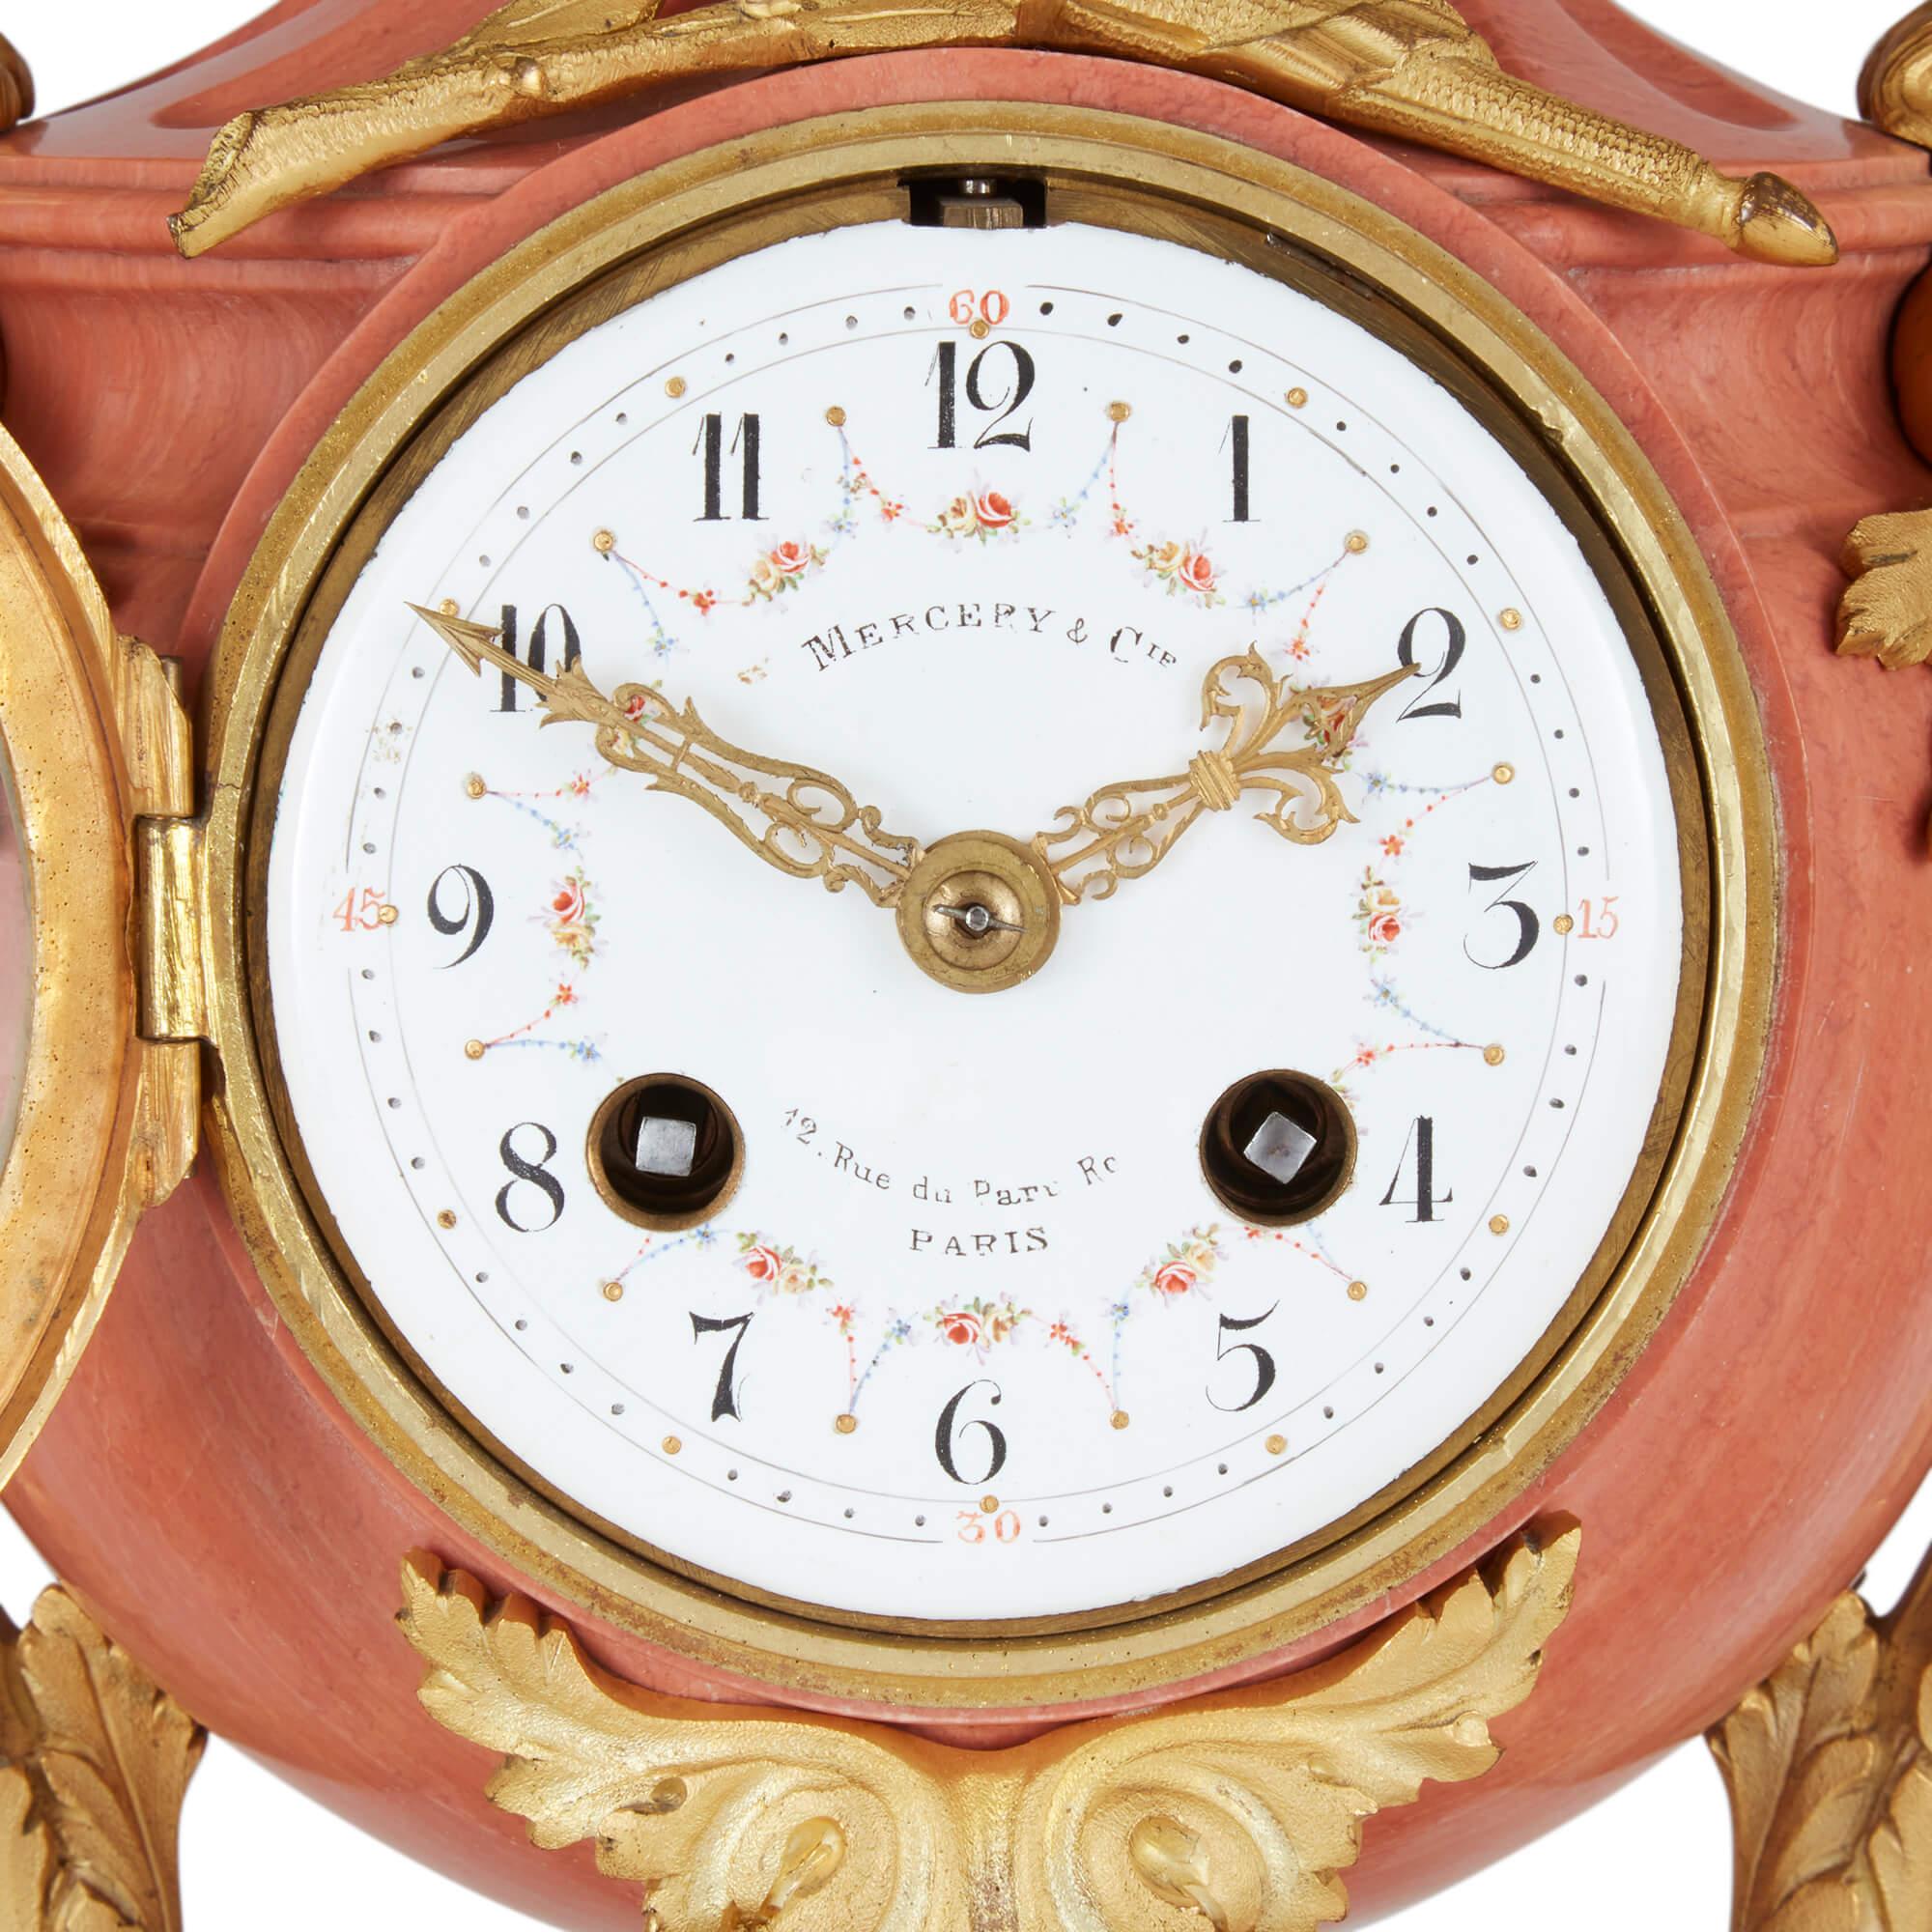 Pendule en marbre rose et bronze doré du 19ème siècle 
Français, fin du 19e siècle 
Horloge : Hauteur 46cm, largeur 23cm, profondeur 18cm 
Chandelier : hauteur 44,5 cm, largeur 22 cm, profondeur 20 cm

Ce meuble d'horloge inhabituel en trois parties